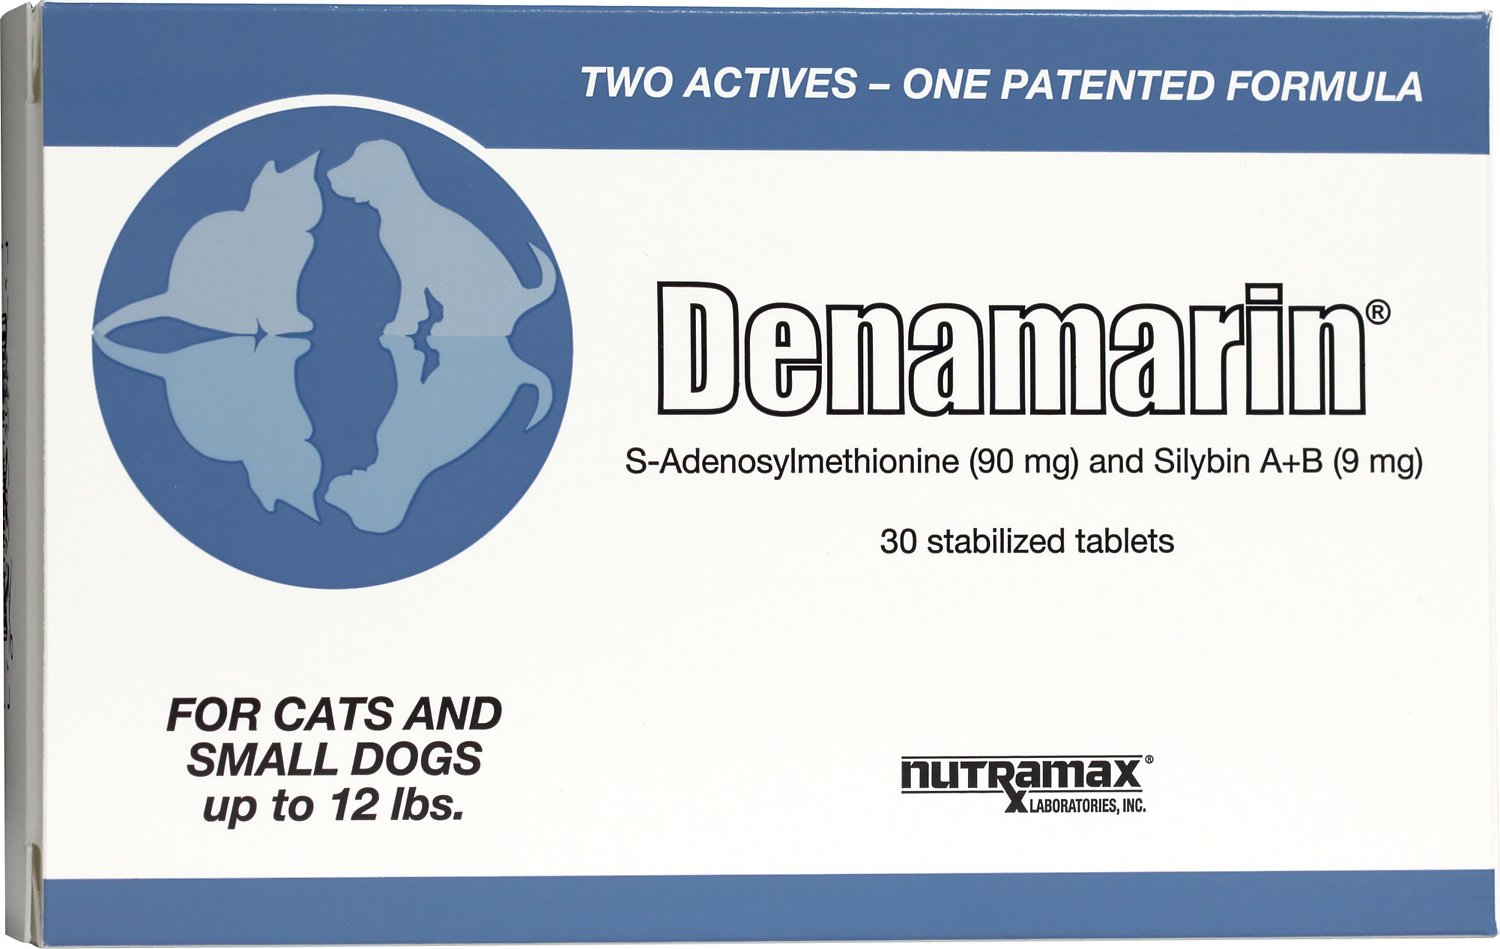 萃麥思DENAMARIN寶肝加強錠90
DENAMARIN TABLETS FOR CATS AND SMALL DOGS